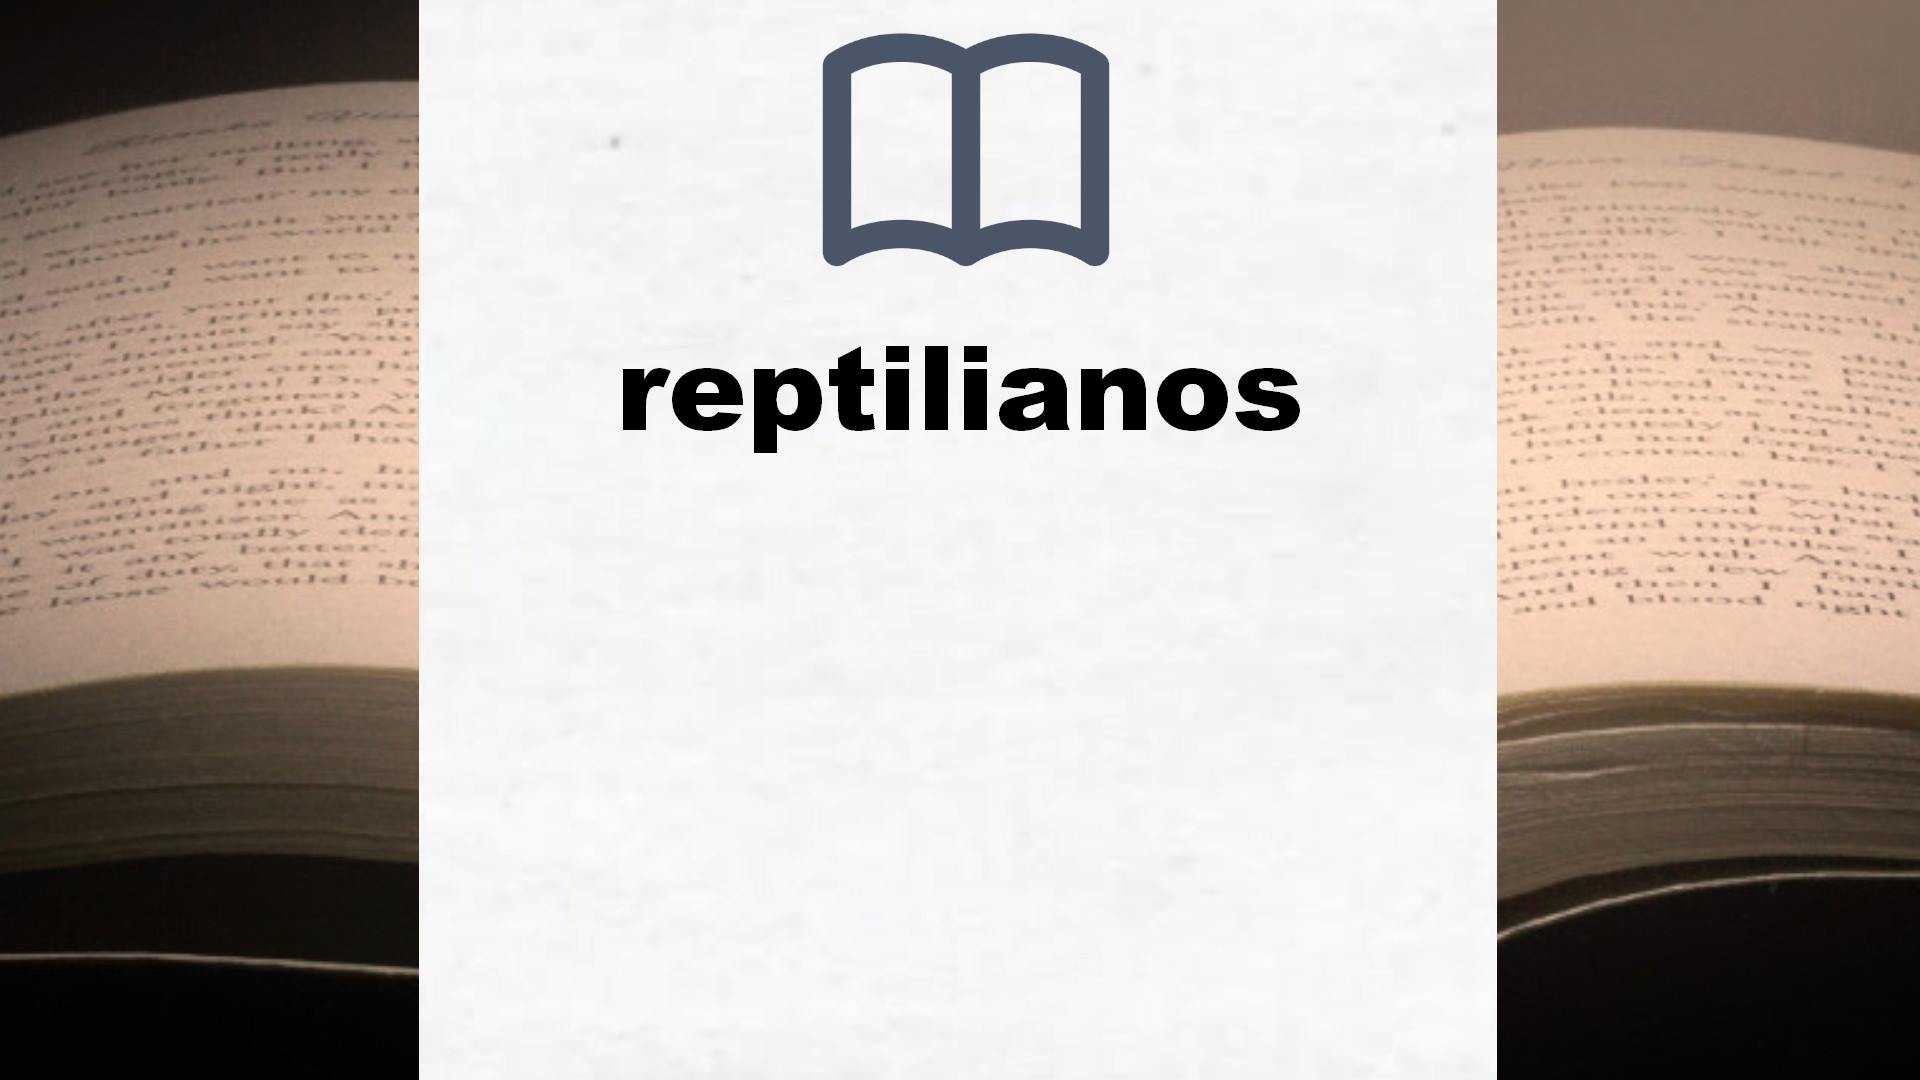 Libros sobre reptilianos